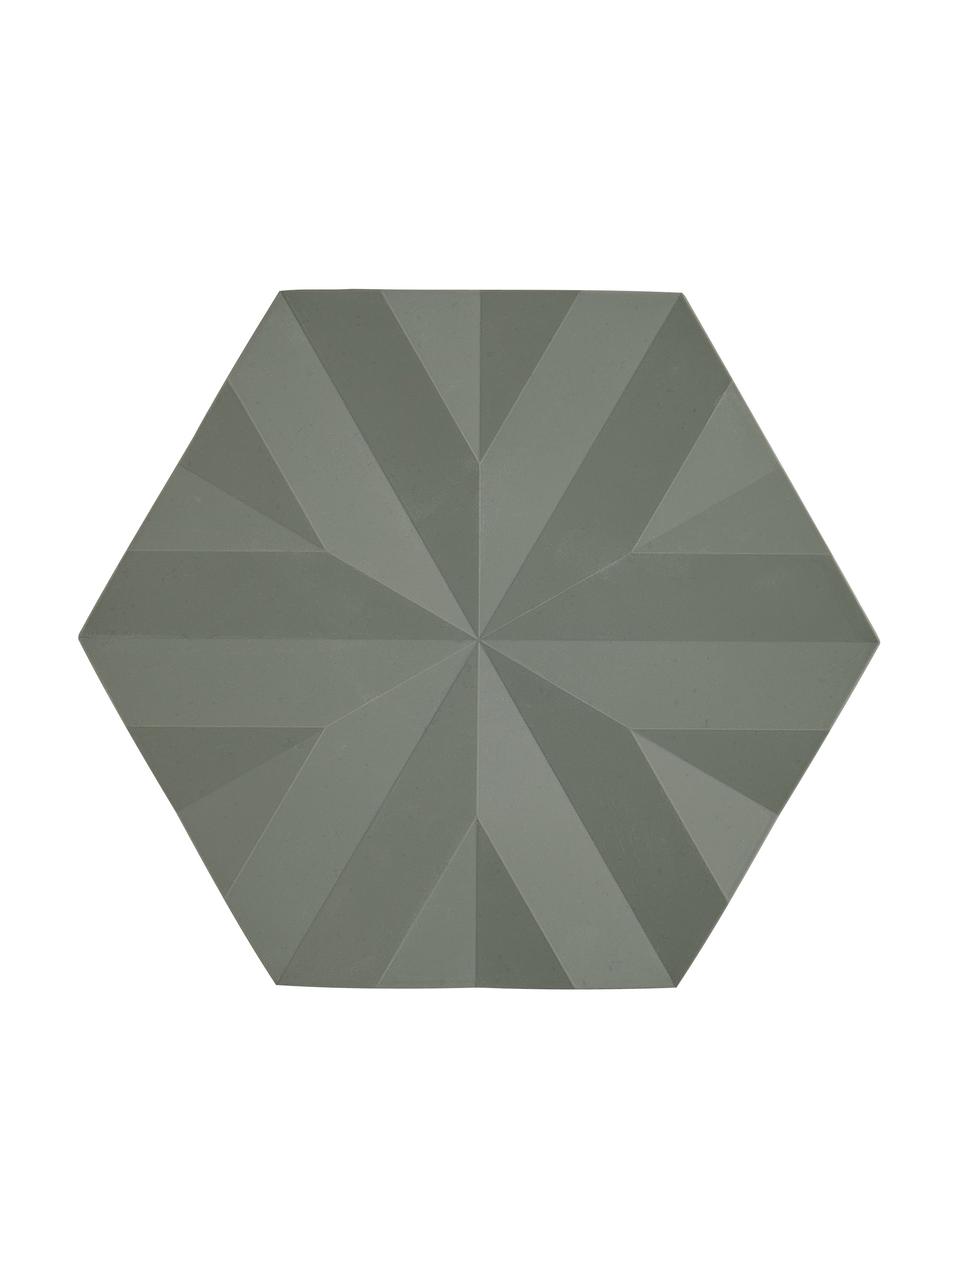 Topfuntersetzer Ori in Olivgrün, 2 Stück, Silikon, Olivgrün, 14 x 16 cm